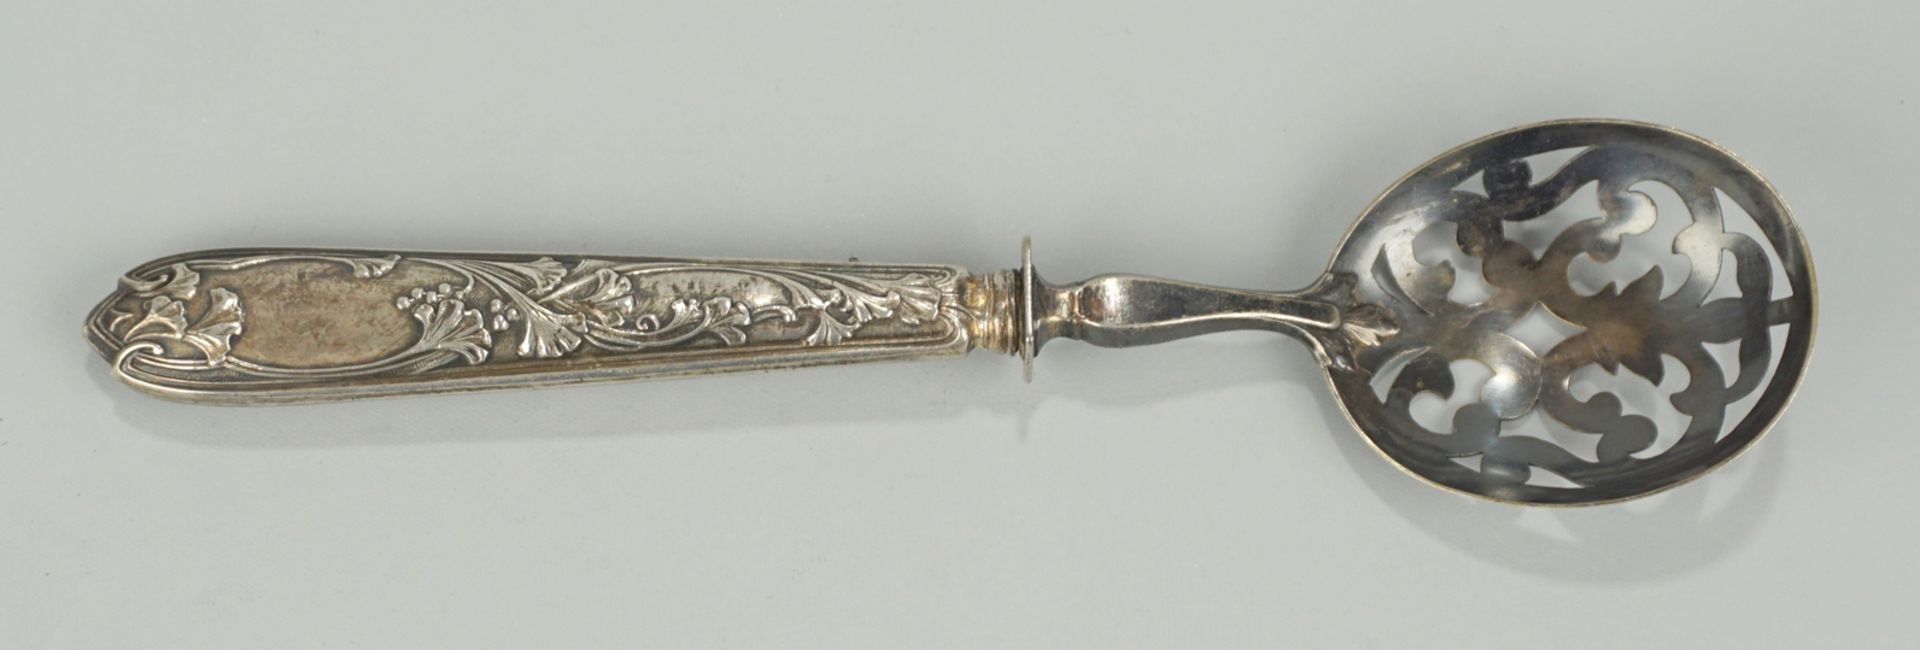 Servierlöffel mit Durchbruchlaffe, Silber, Frankreich, um 1900